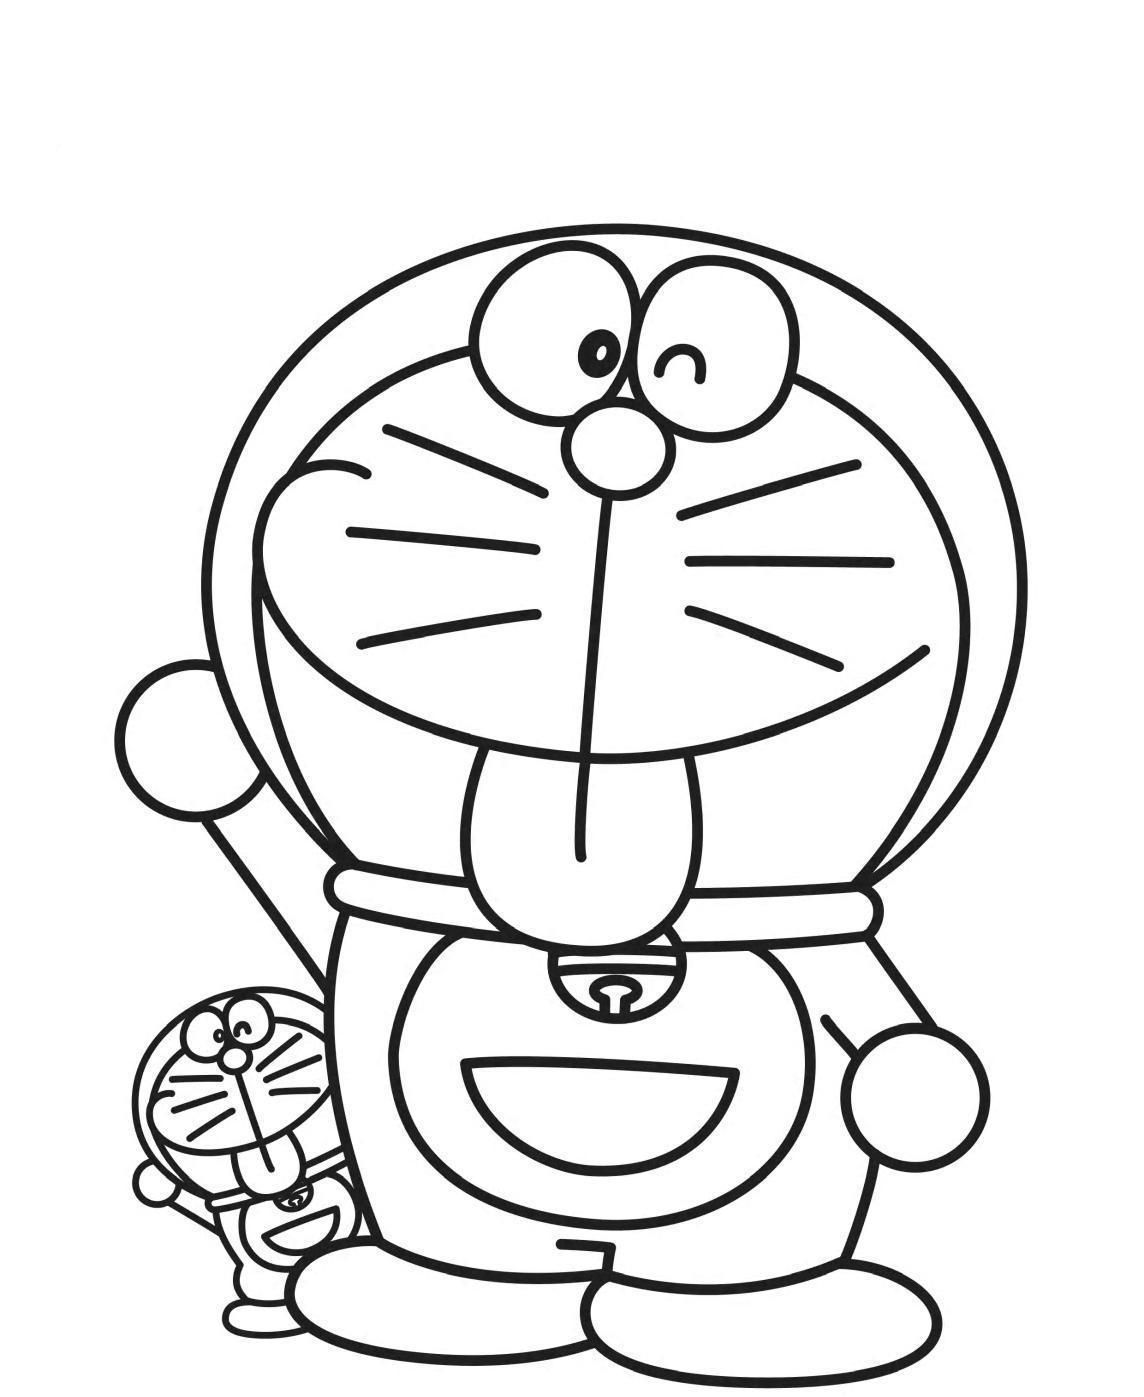 Doraemon Coloring Pages là bộ sưu tập tranh tô màu được yêu thích nhất trong cộng đồng các fan của các loài manga/anime. Với những hình ảnh độc đáo và sinh động, bạn sẽ có cơ hội trải nghiệm những giây phút thư giãn và sáng tạo.